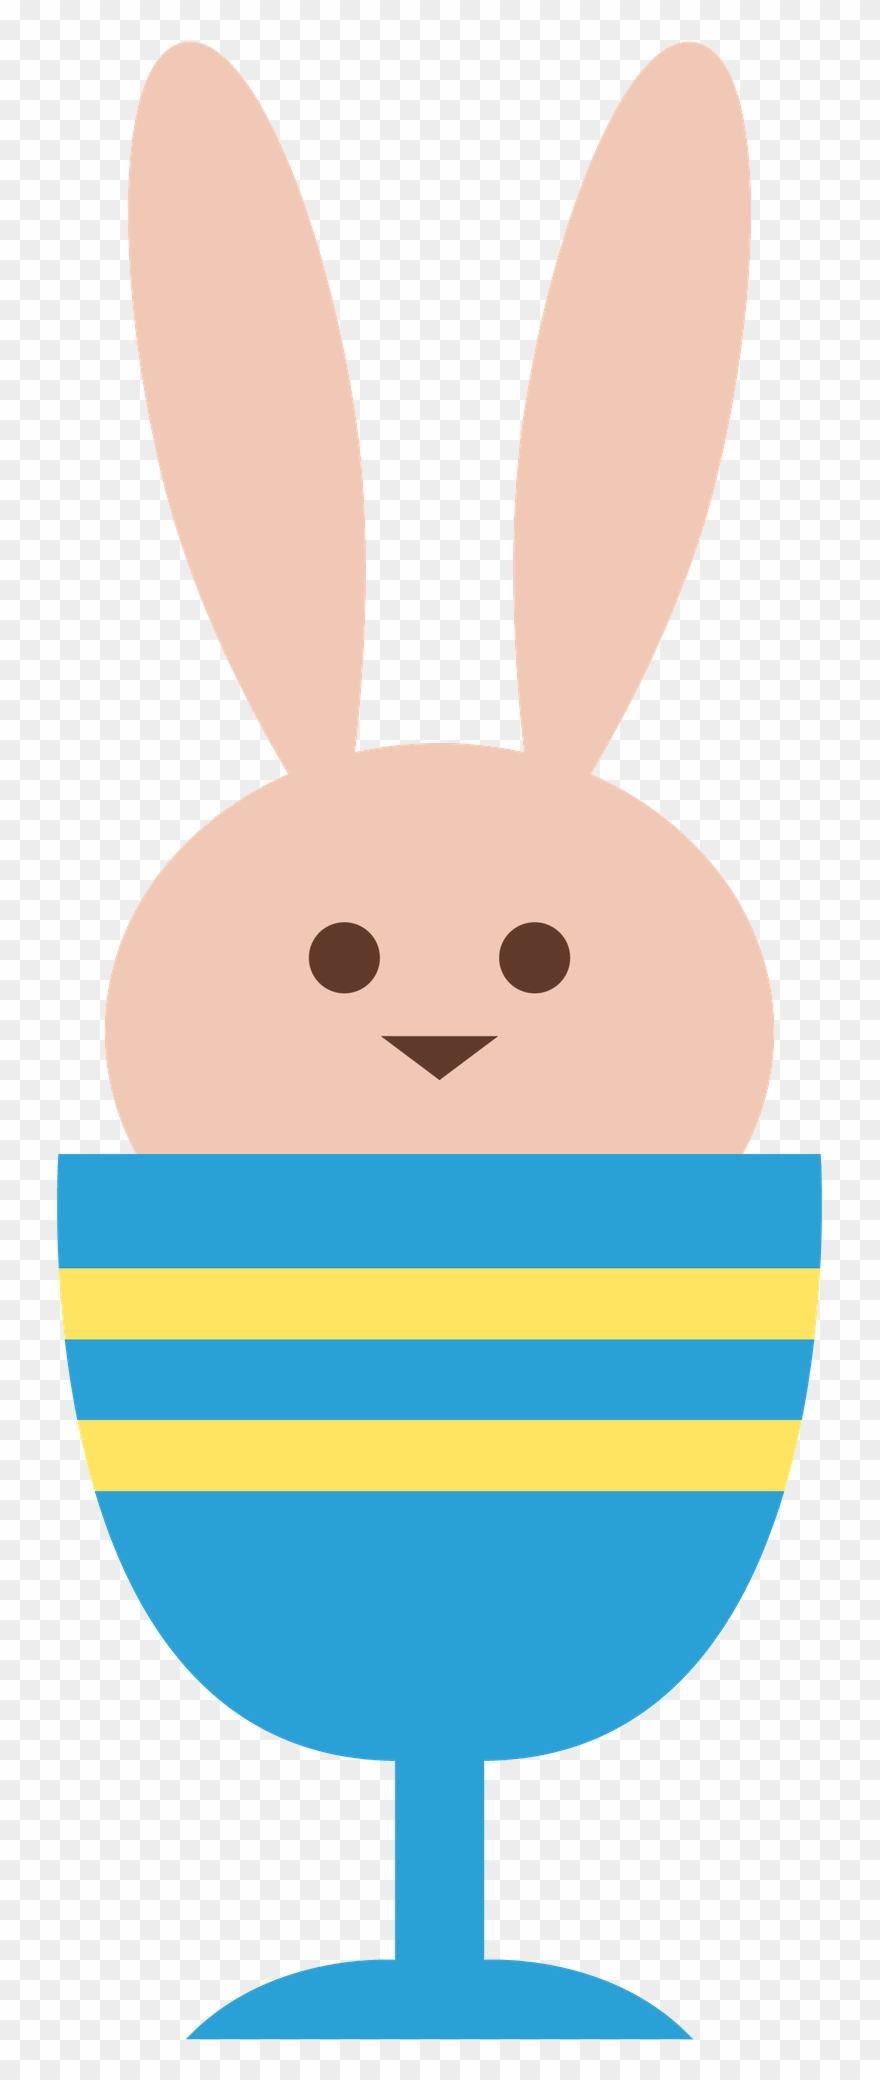 Easter Bunny Conejo De Pascua, Clipart.